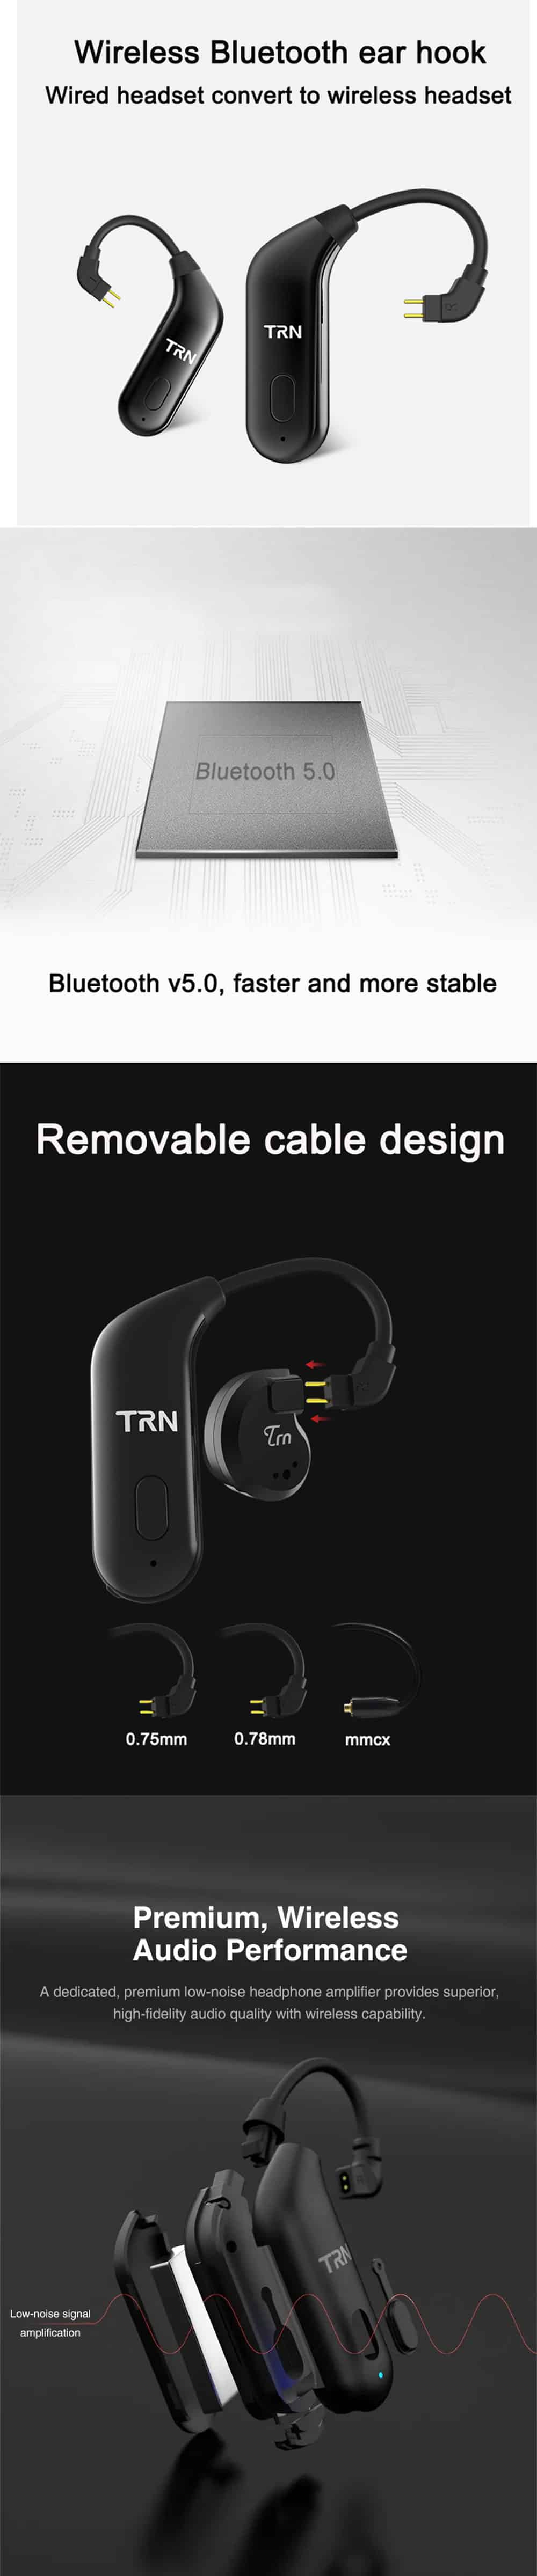 TRN BT20 Bluetooth 5.0 Wireless Adapter 0.78mm Connector 2